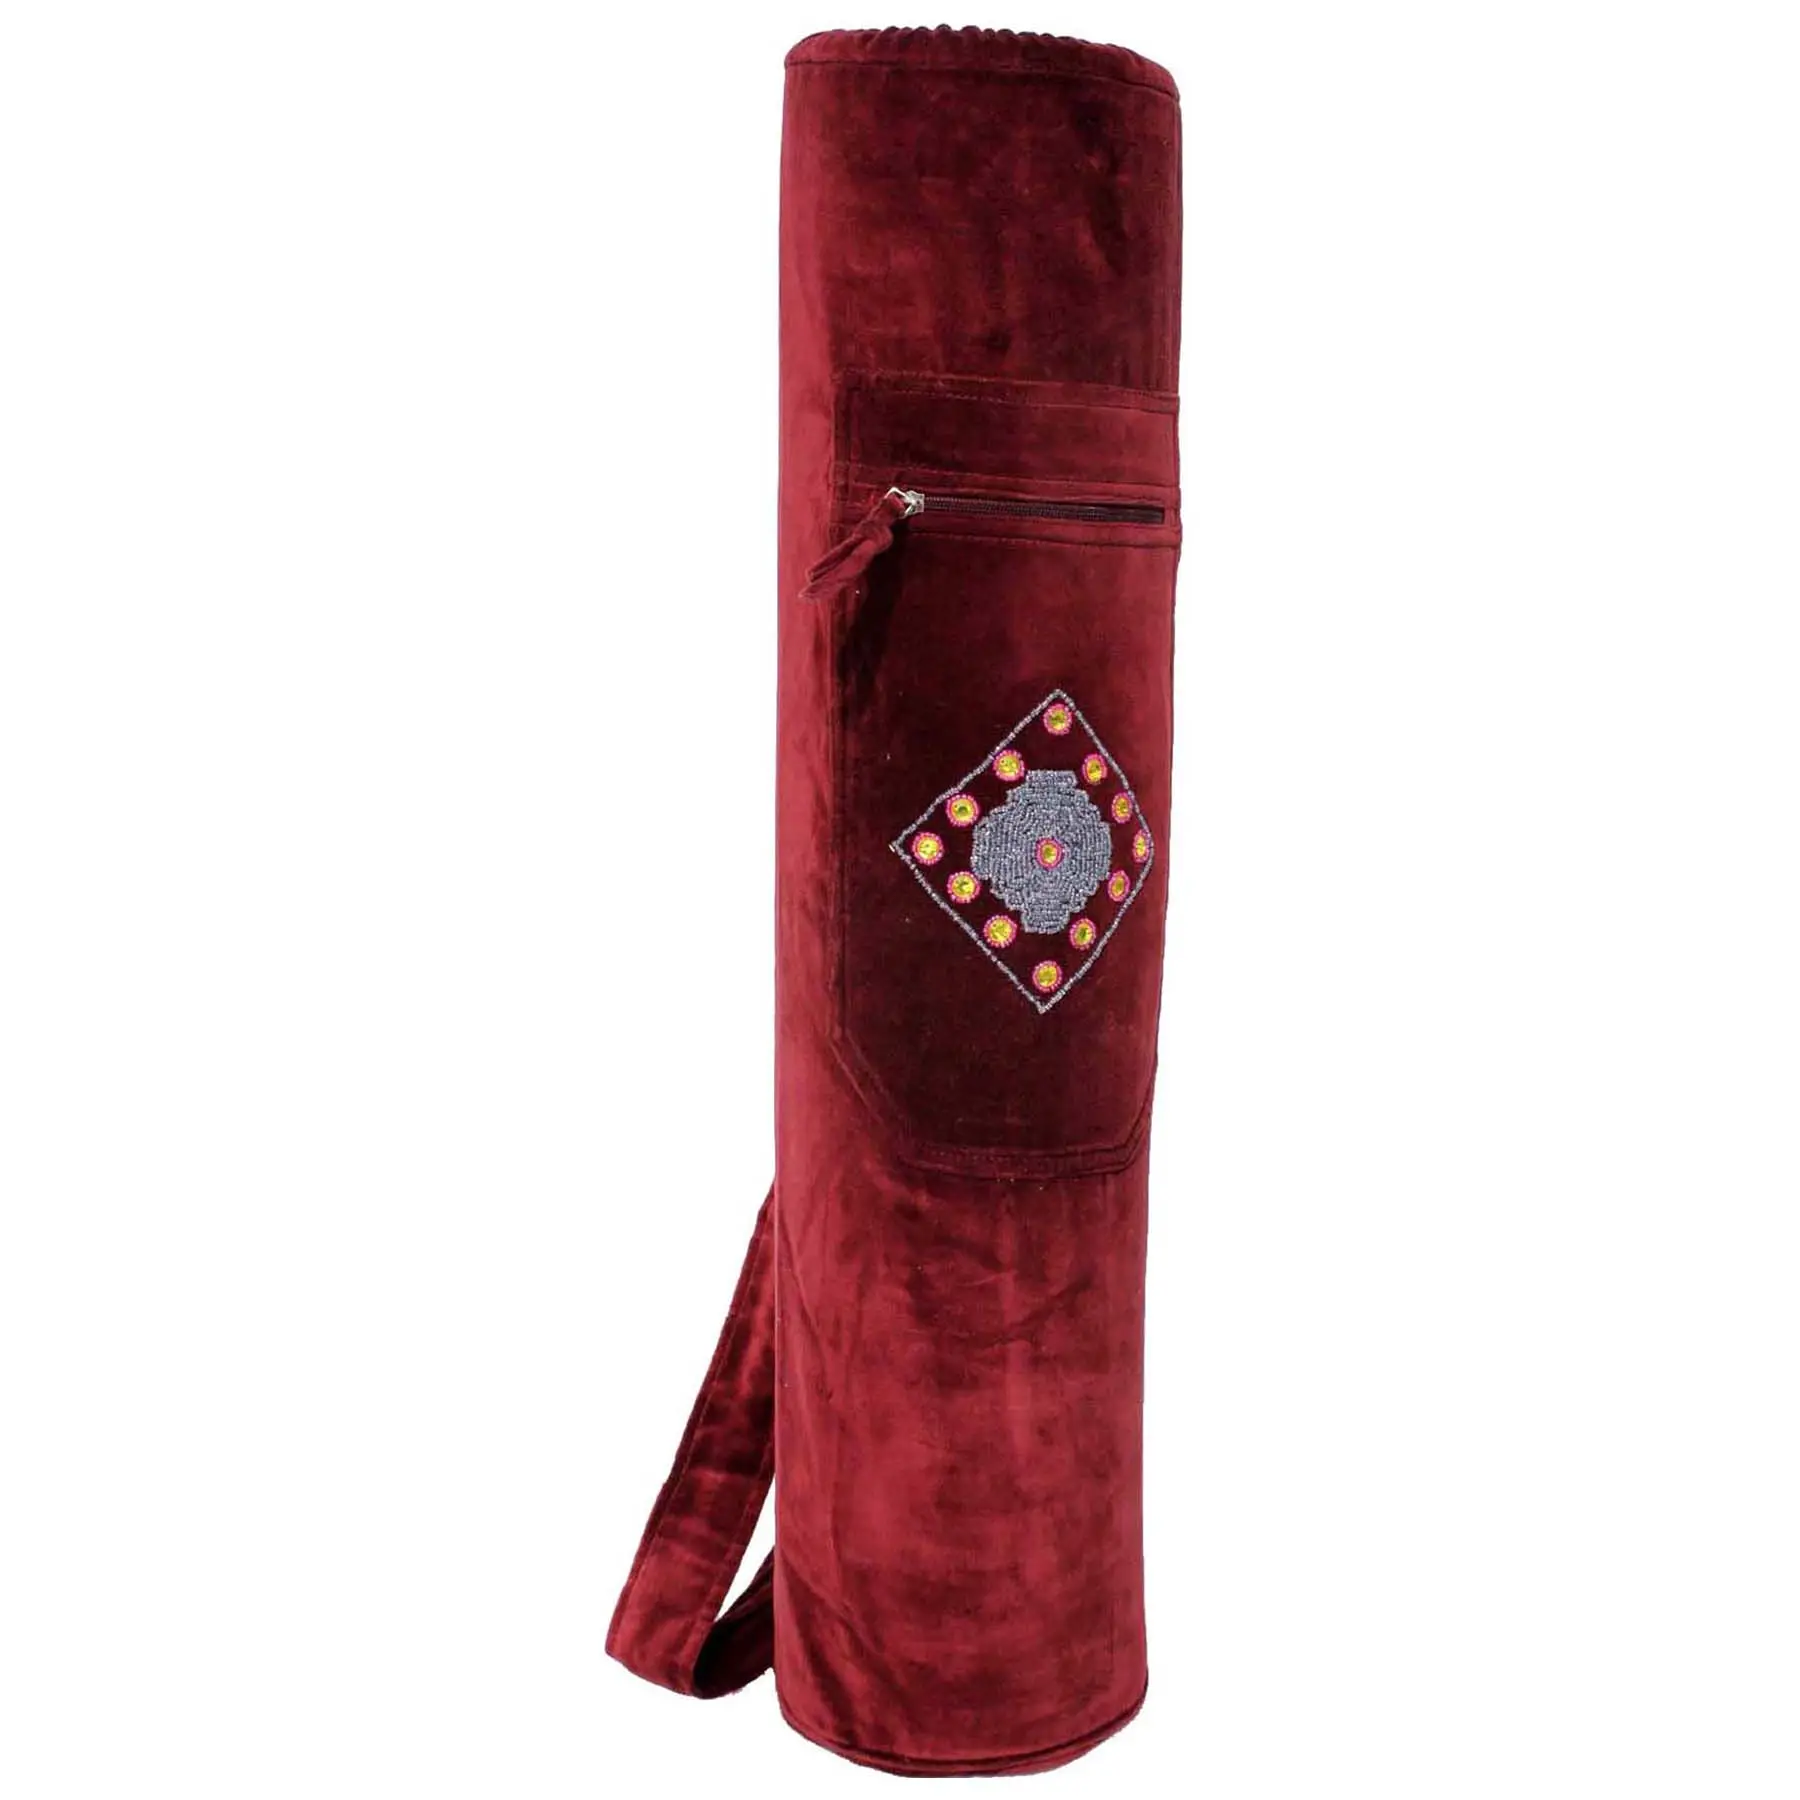 Vendita calda ultimo prodotto nuovo di zecca portatile con coulisse Yoga tappetino borsa-Chakra. In tasca a prezzo competitivo